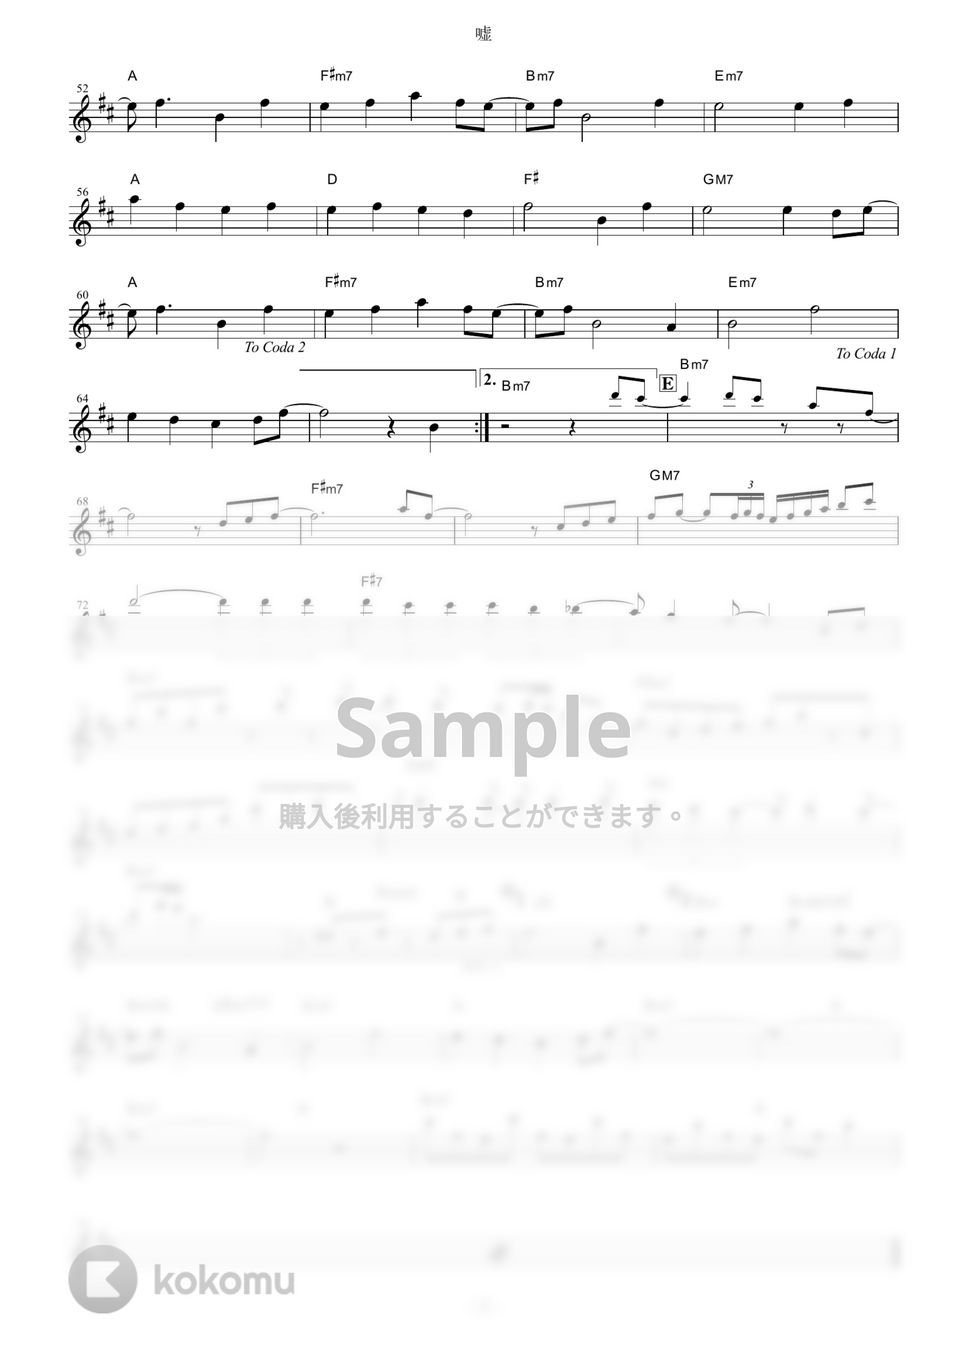 シド - 嘘 (『鋼の錬金術師 FULLMETAL ALCHEMIST』 / in C) by muta-sax